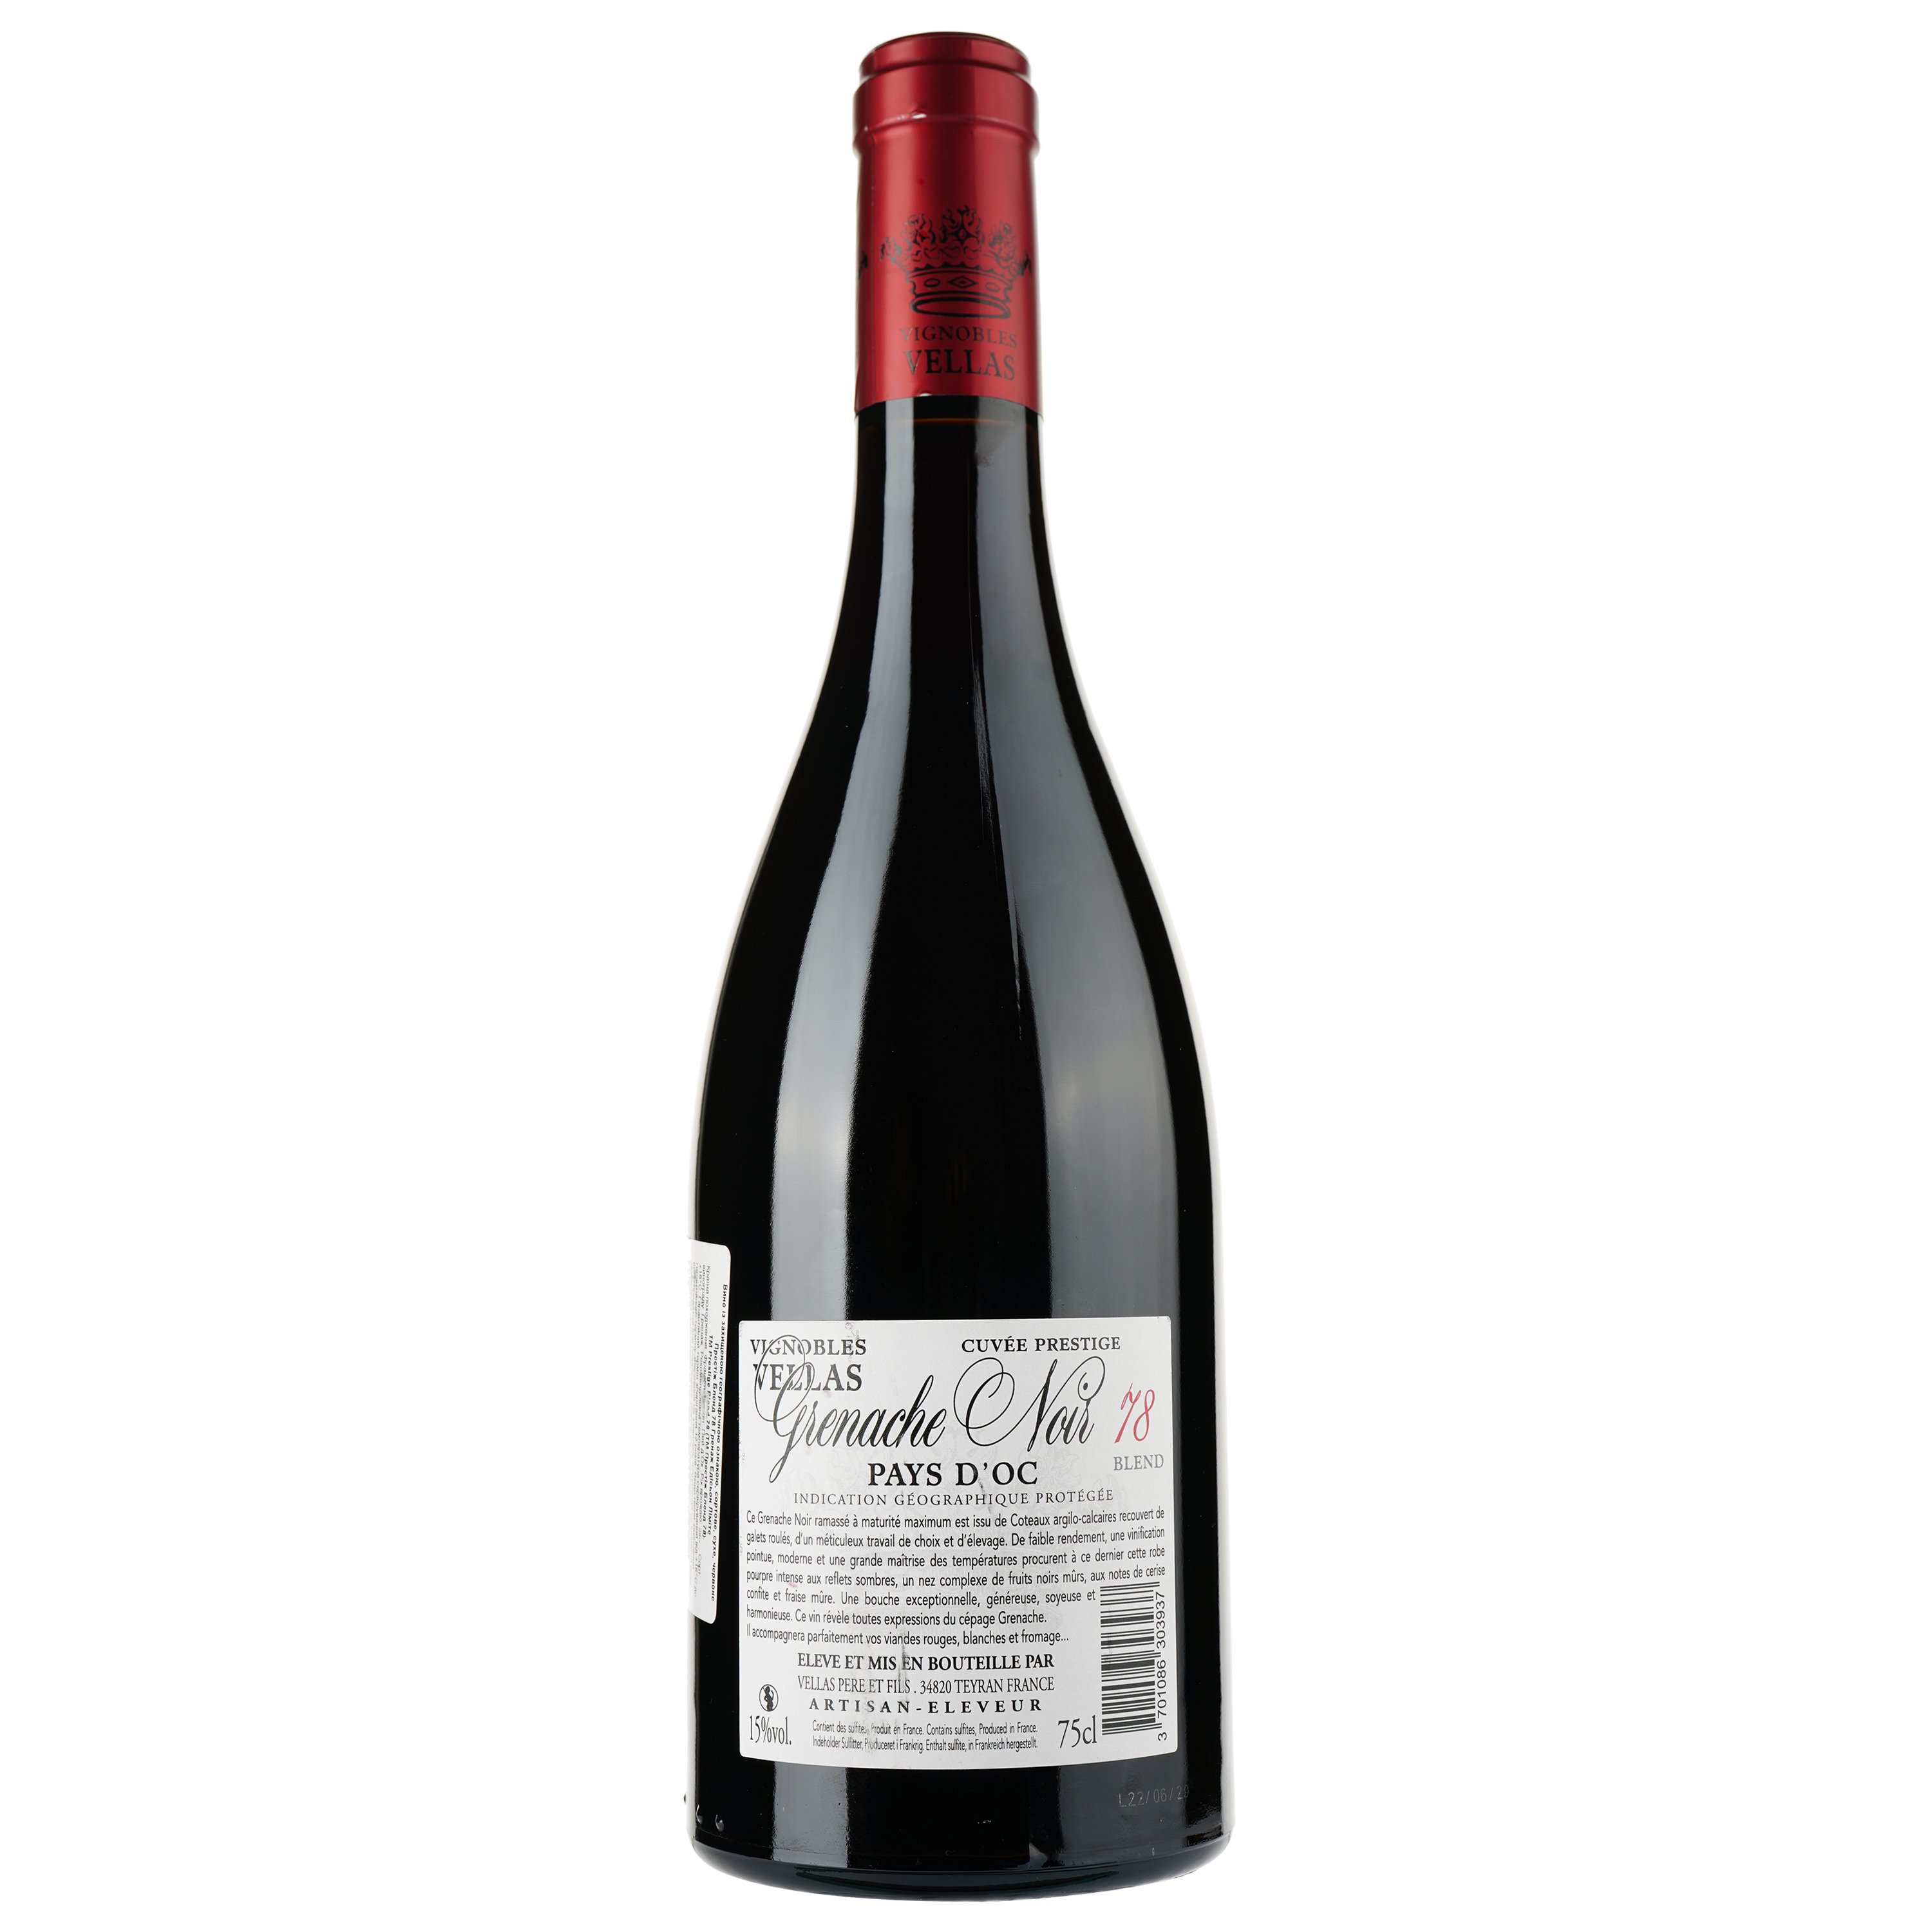 Вино Vignobles Vellas Grenache Noir 78 Blend Edition Limitee IGP Pays D'Oc, червоне, сухе, 0,75 л - фото 2